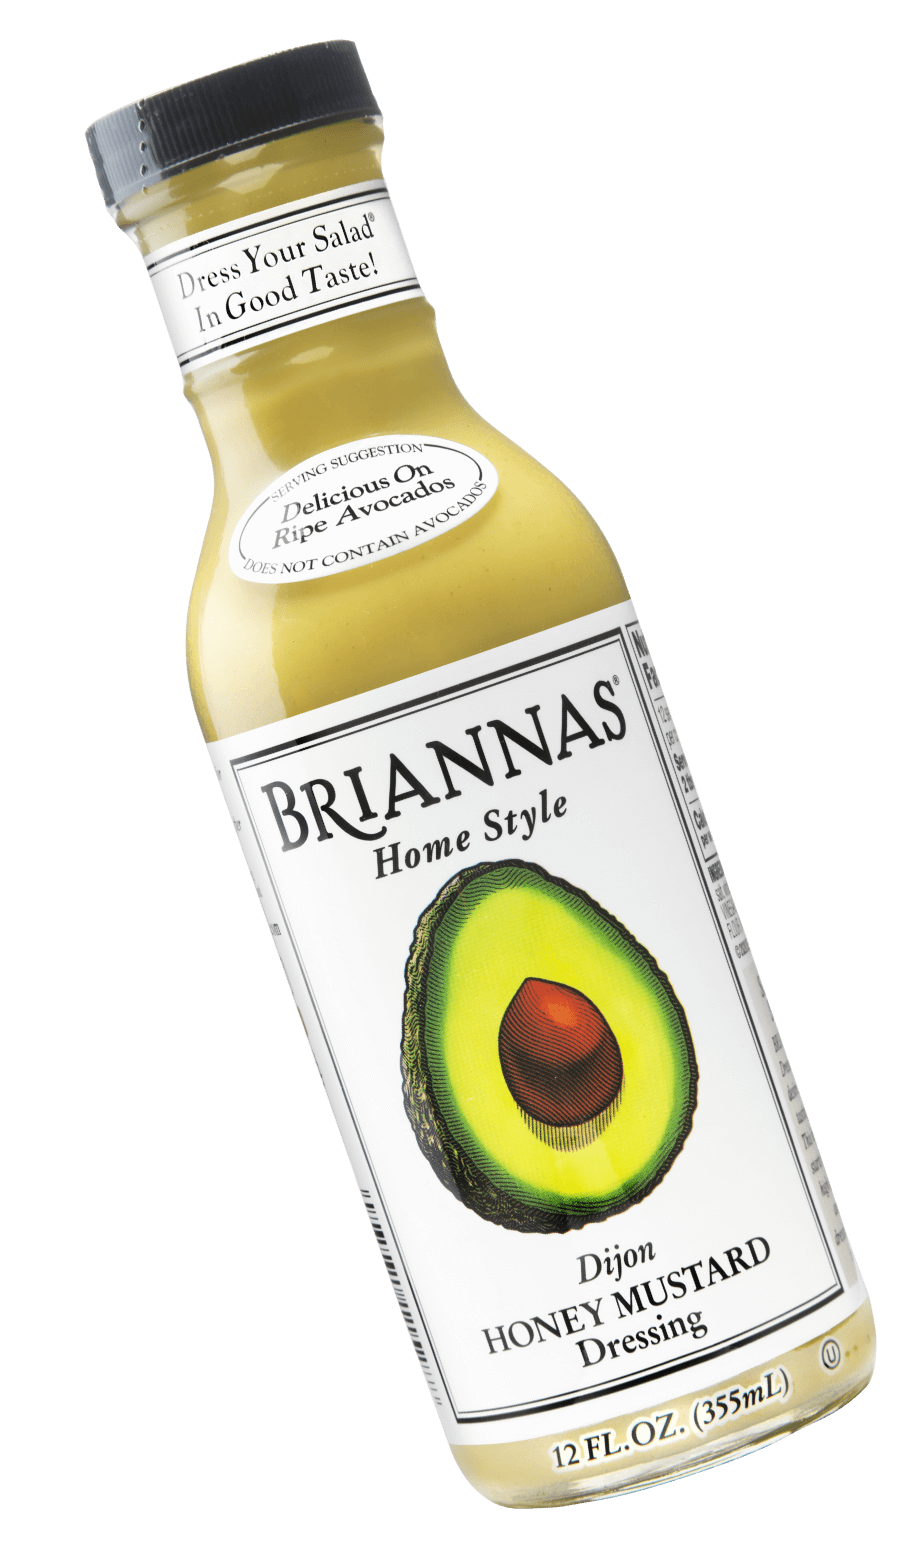 BRIANNAS bottle